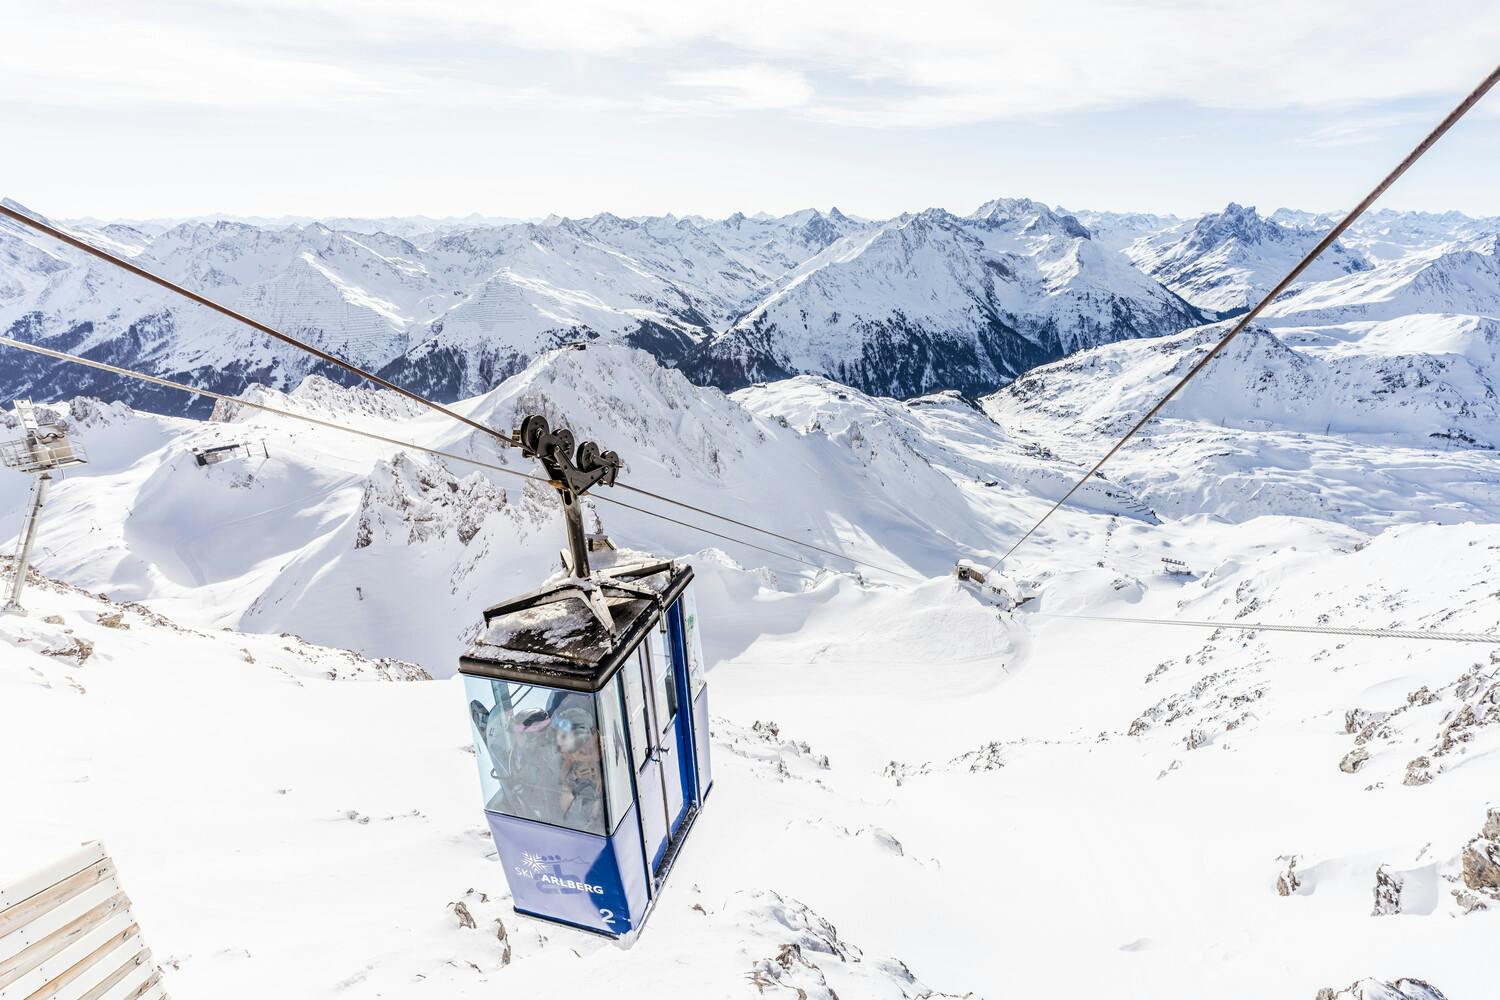 Gondola taking skiers to top of mountain in St Anton ski resort